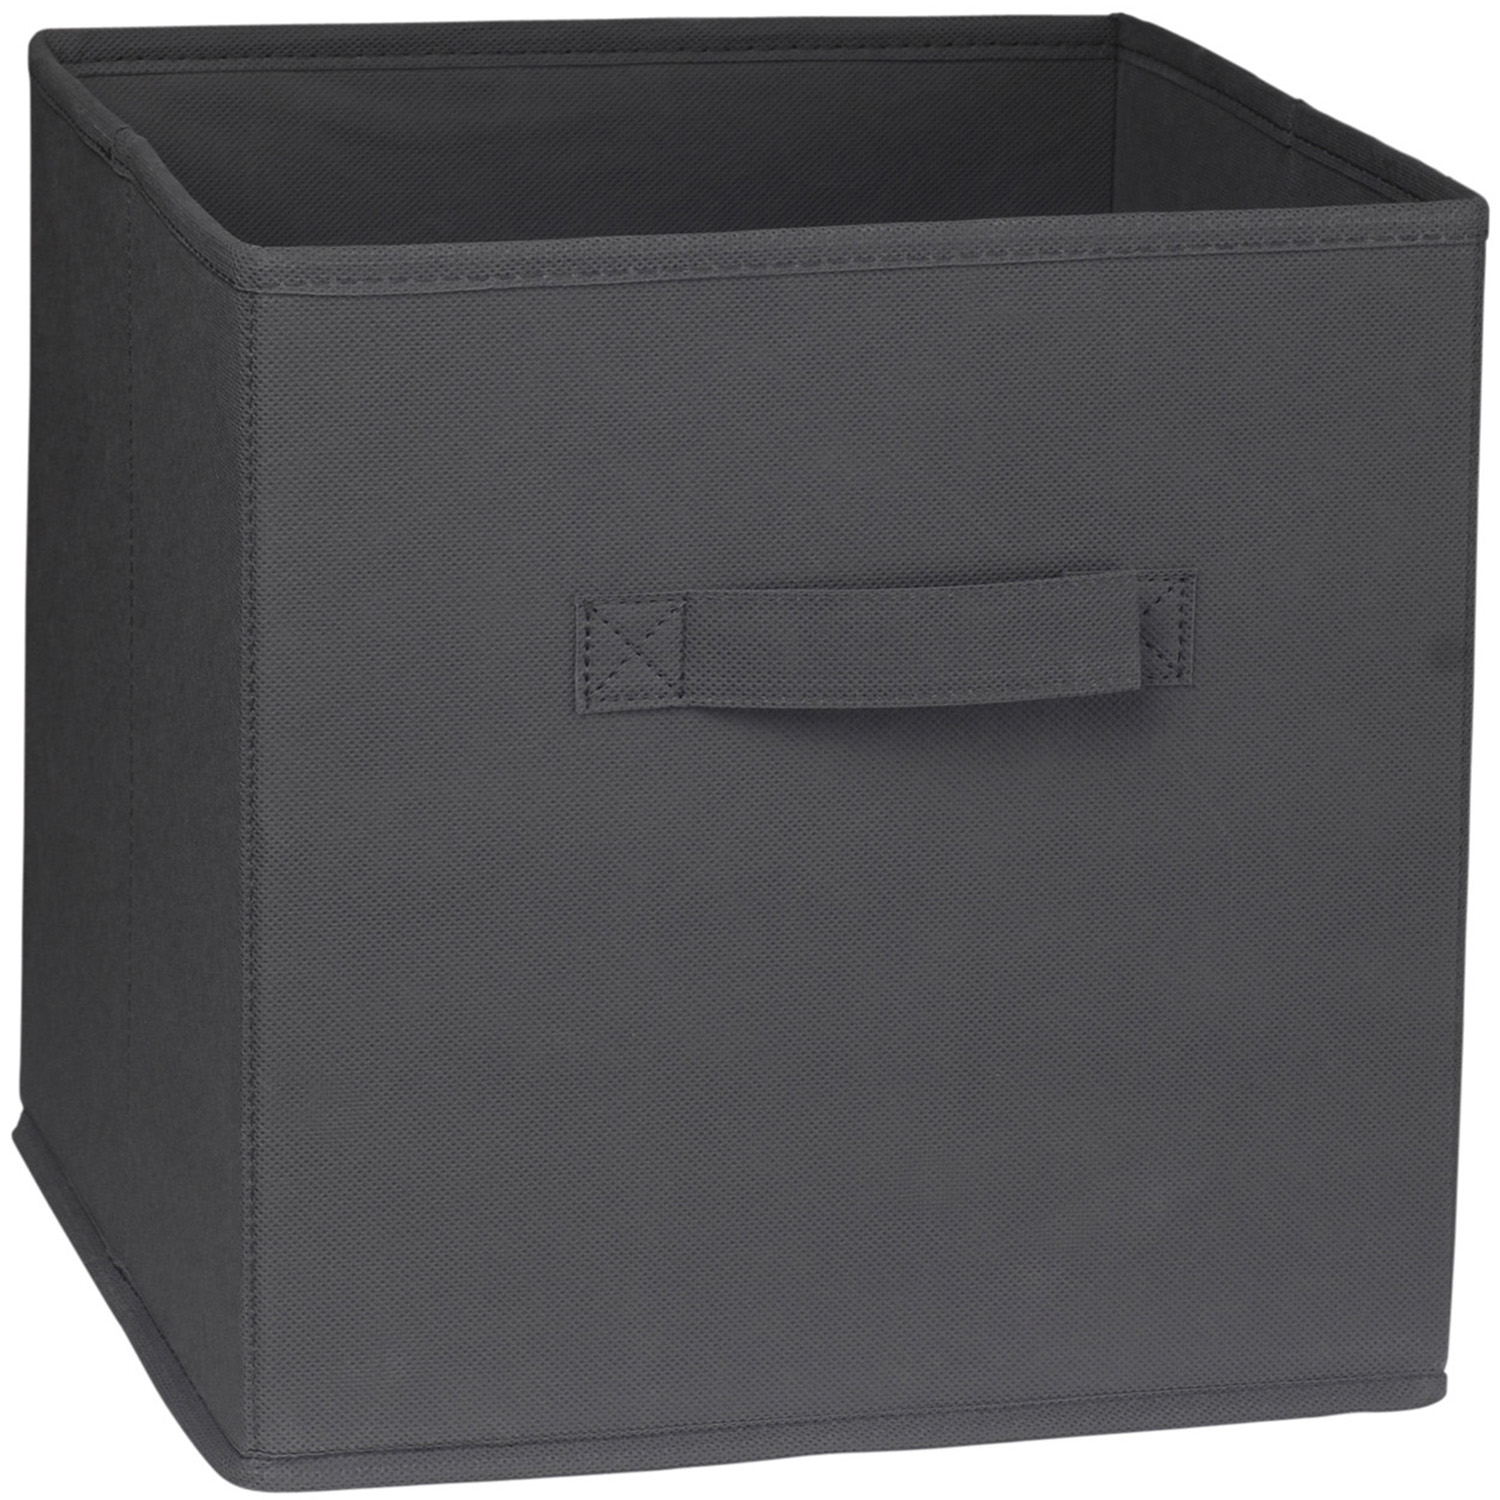 Grey Storage Cube Image 1